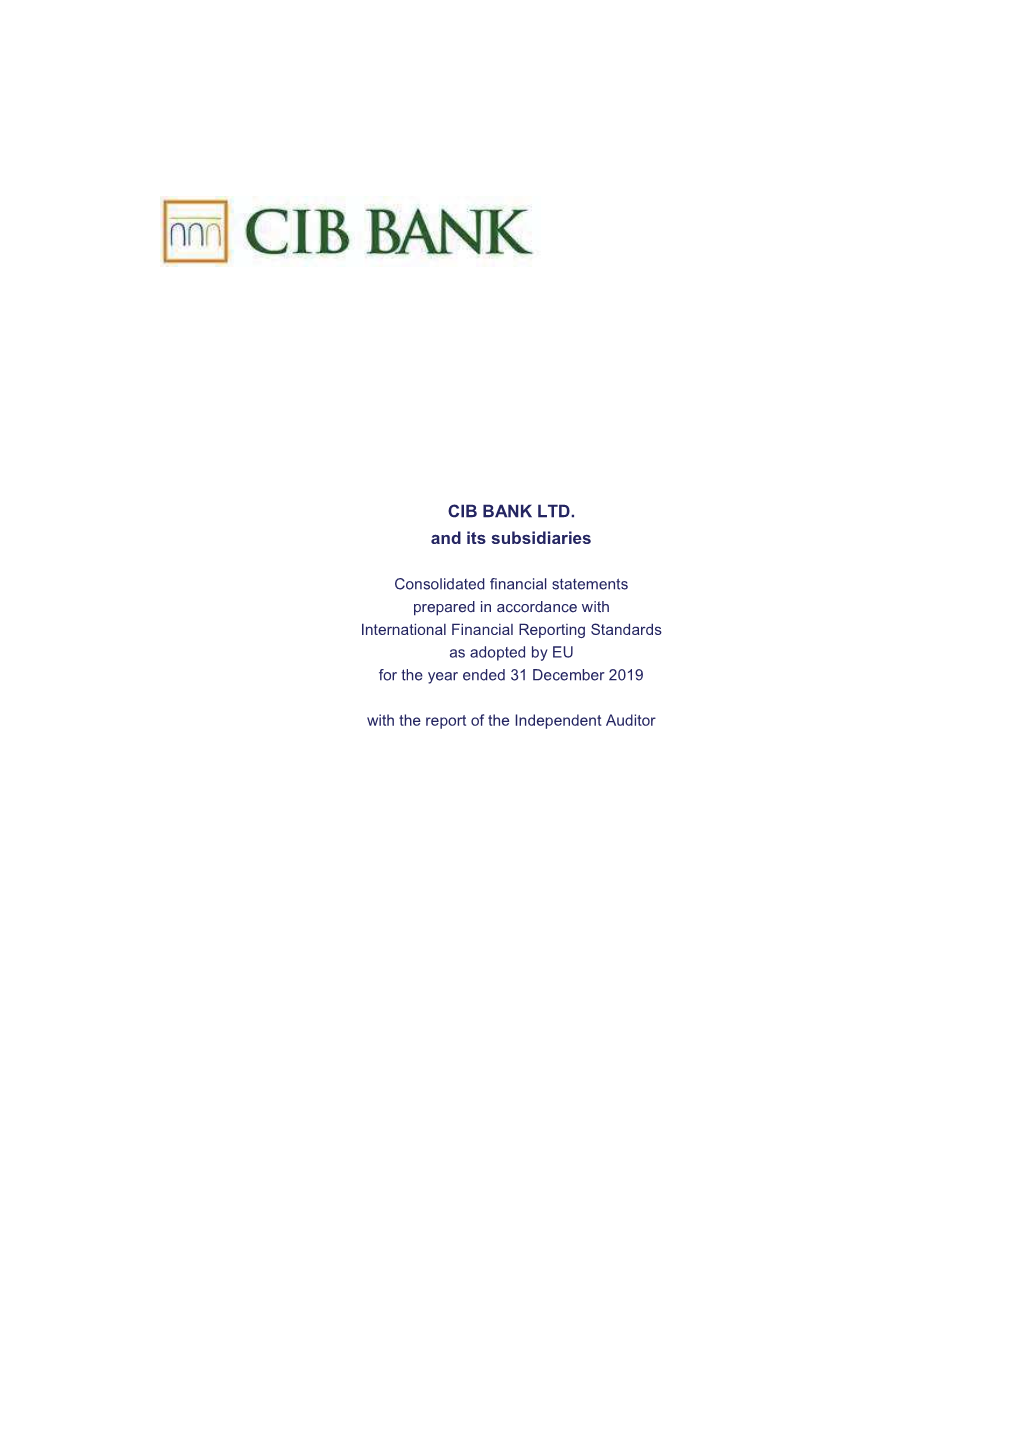 CIB BANK LTD. and Its Subsidiaries